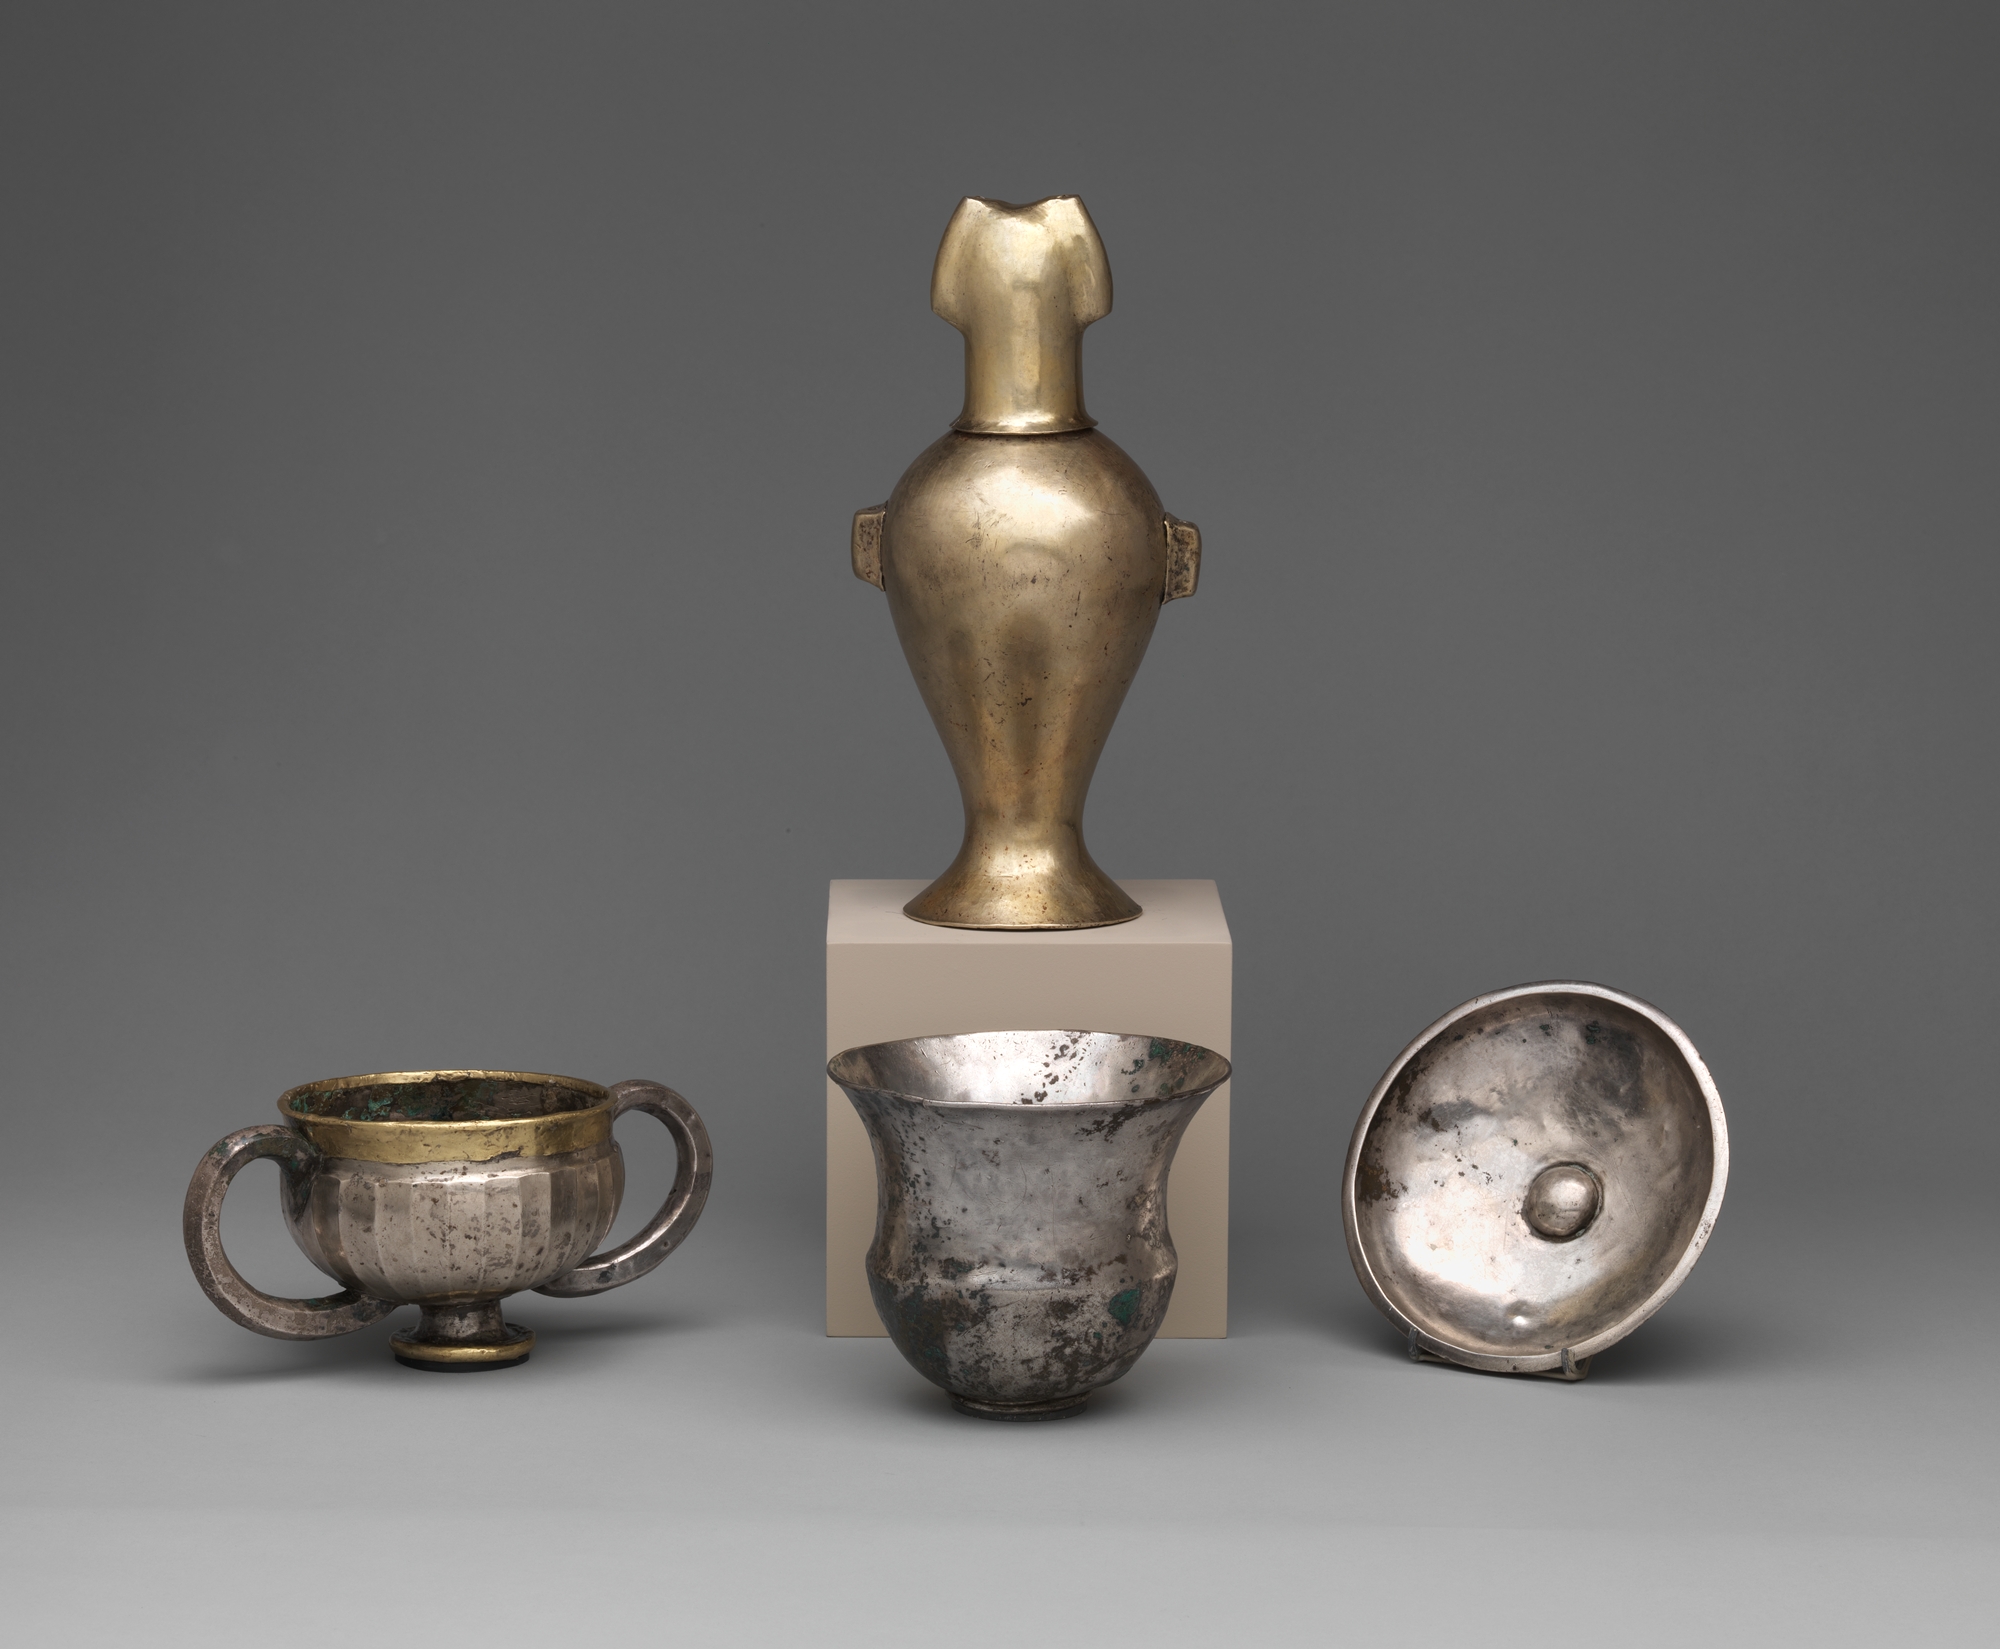 Met Collection: Gruppe von vier Vasen ca. 2300-2000 vor Christus